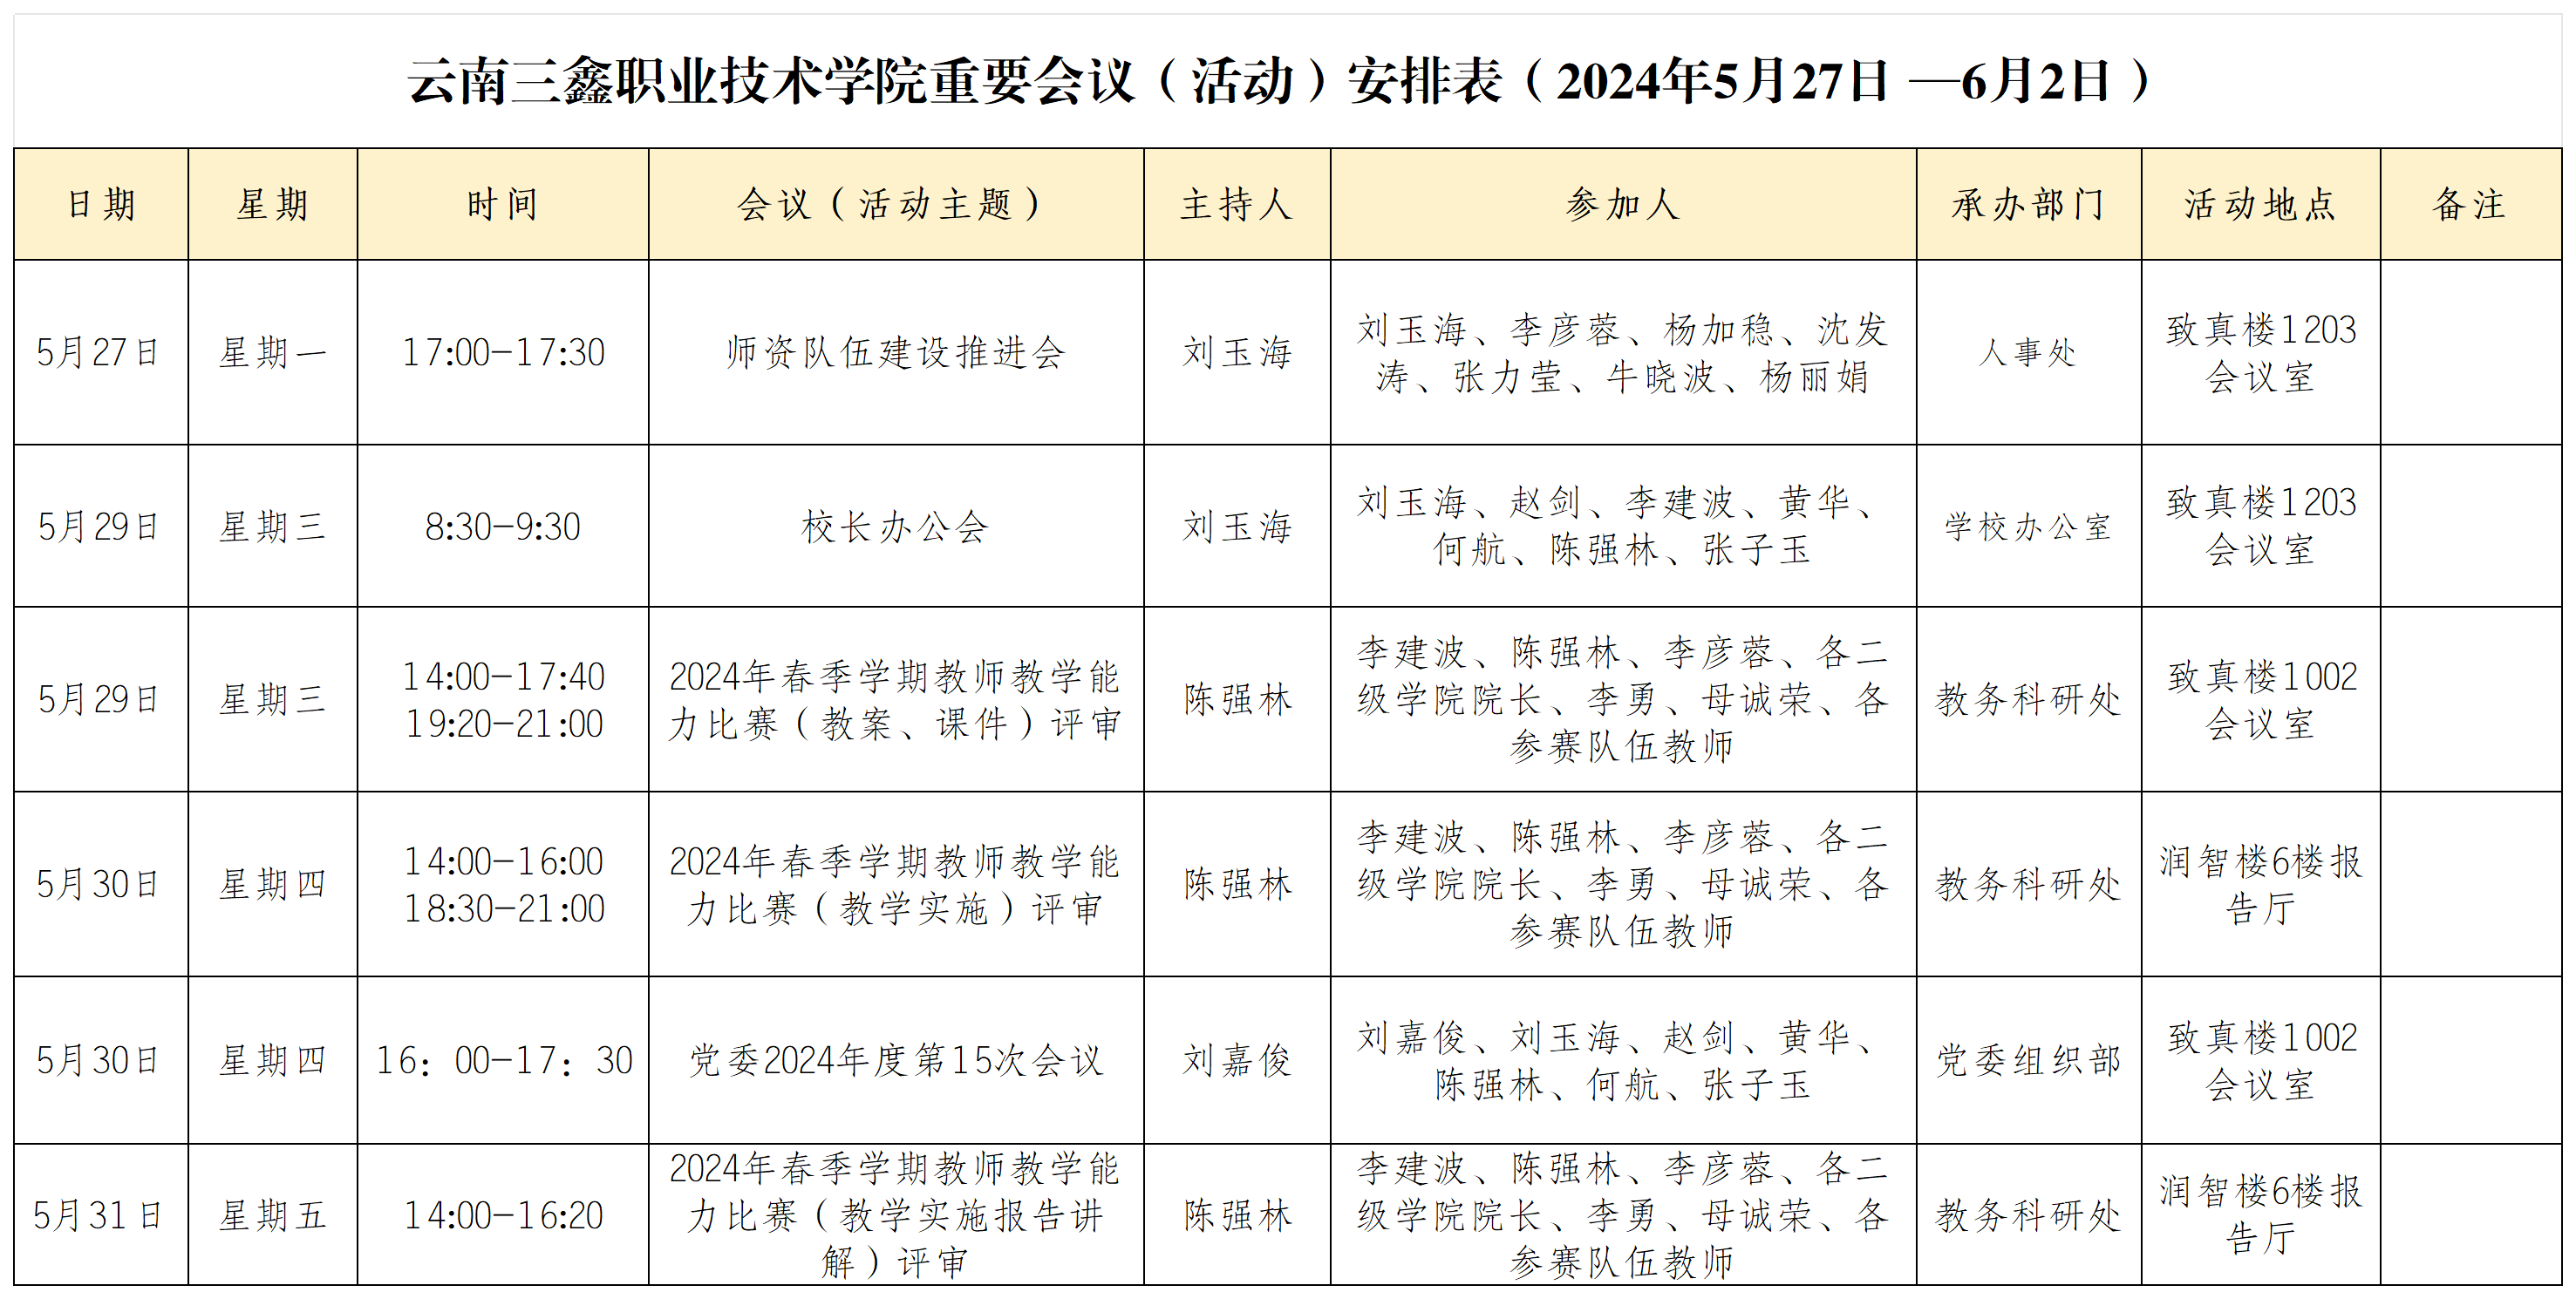 云南三鑫职业技术学院重要会议（活动）安排表（2024年5月27日 —6月2日）